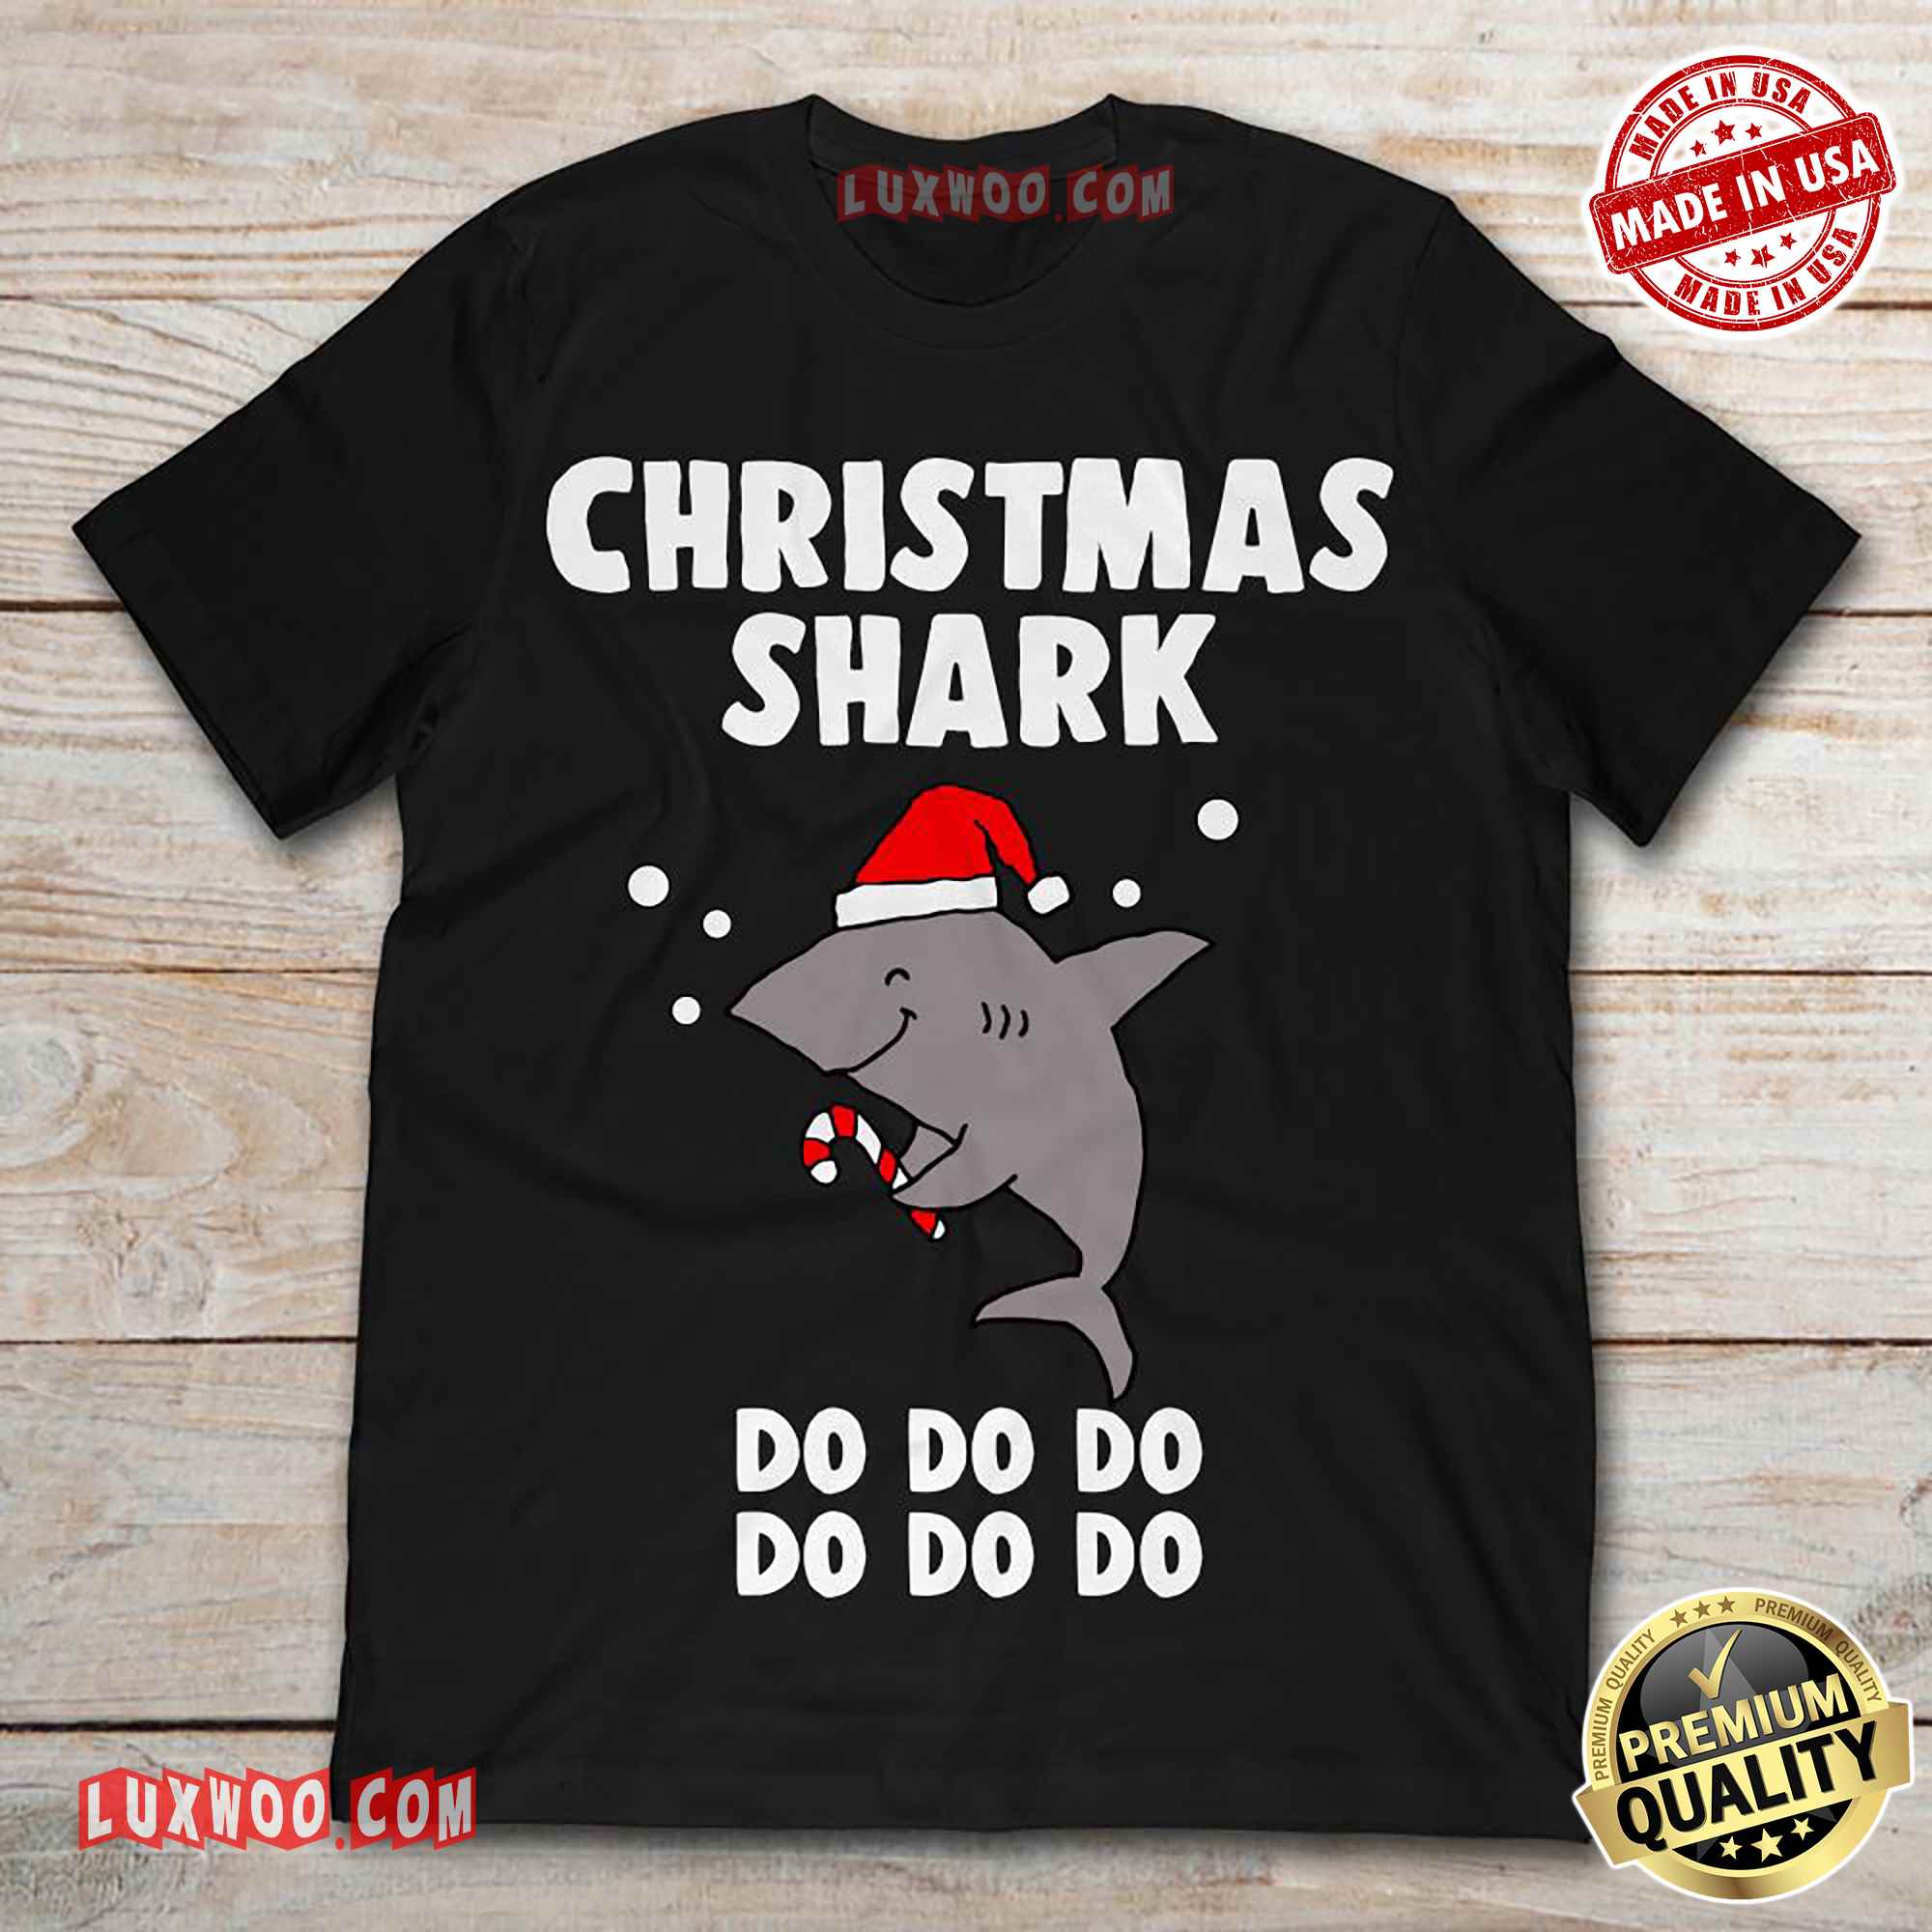 Christmas Shark Doo Doo Doo Tshirt